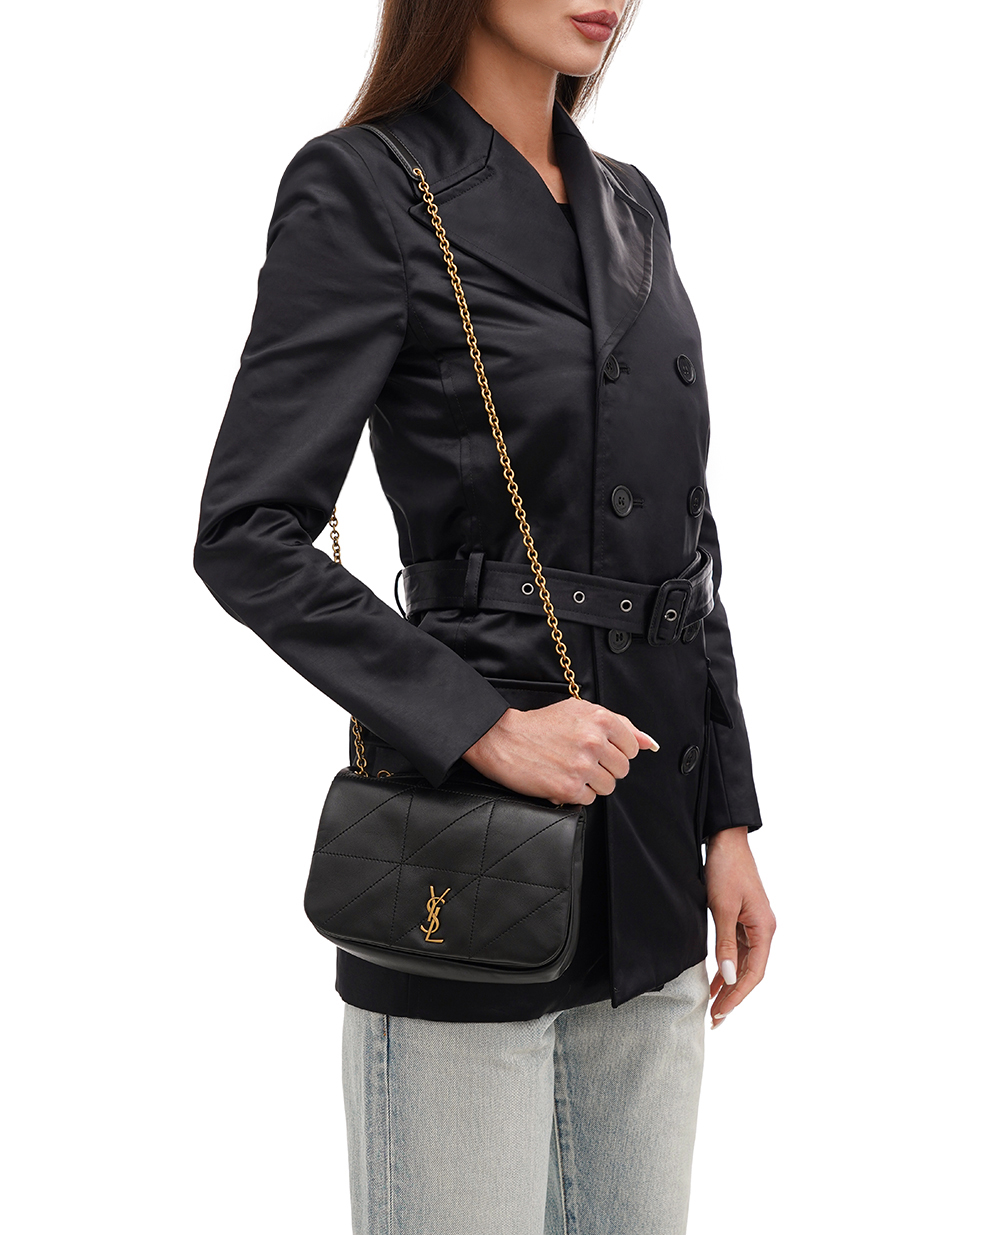 Кожаная сумка Jamie 4.3 Mini Saint Laurent 766754-AAB32, черный цвет • Купить в интернет-магазине Kameron